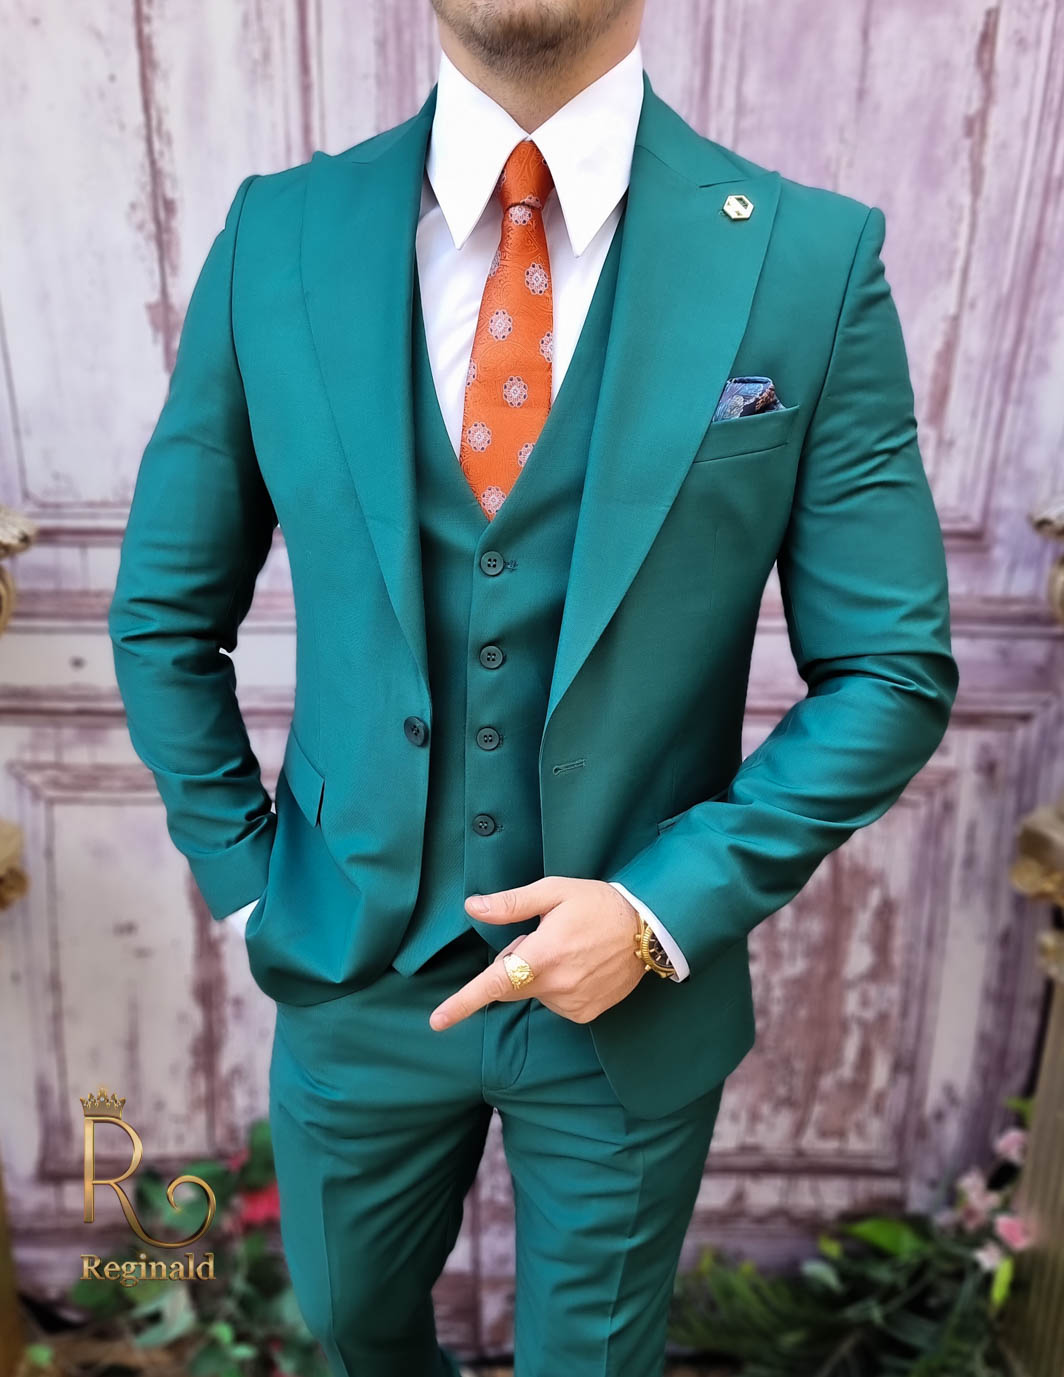 fjende Madison vare Elegant jakkesæt til mænd, grøn, jakke, vest og bukser - C4011